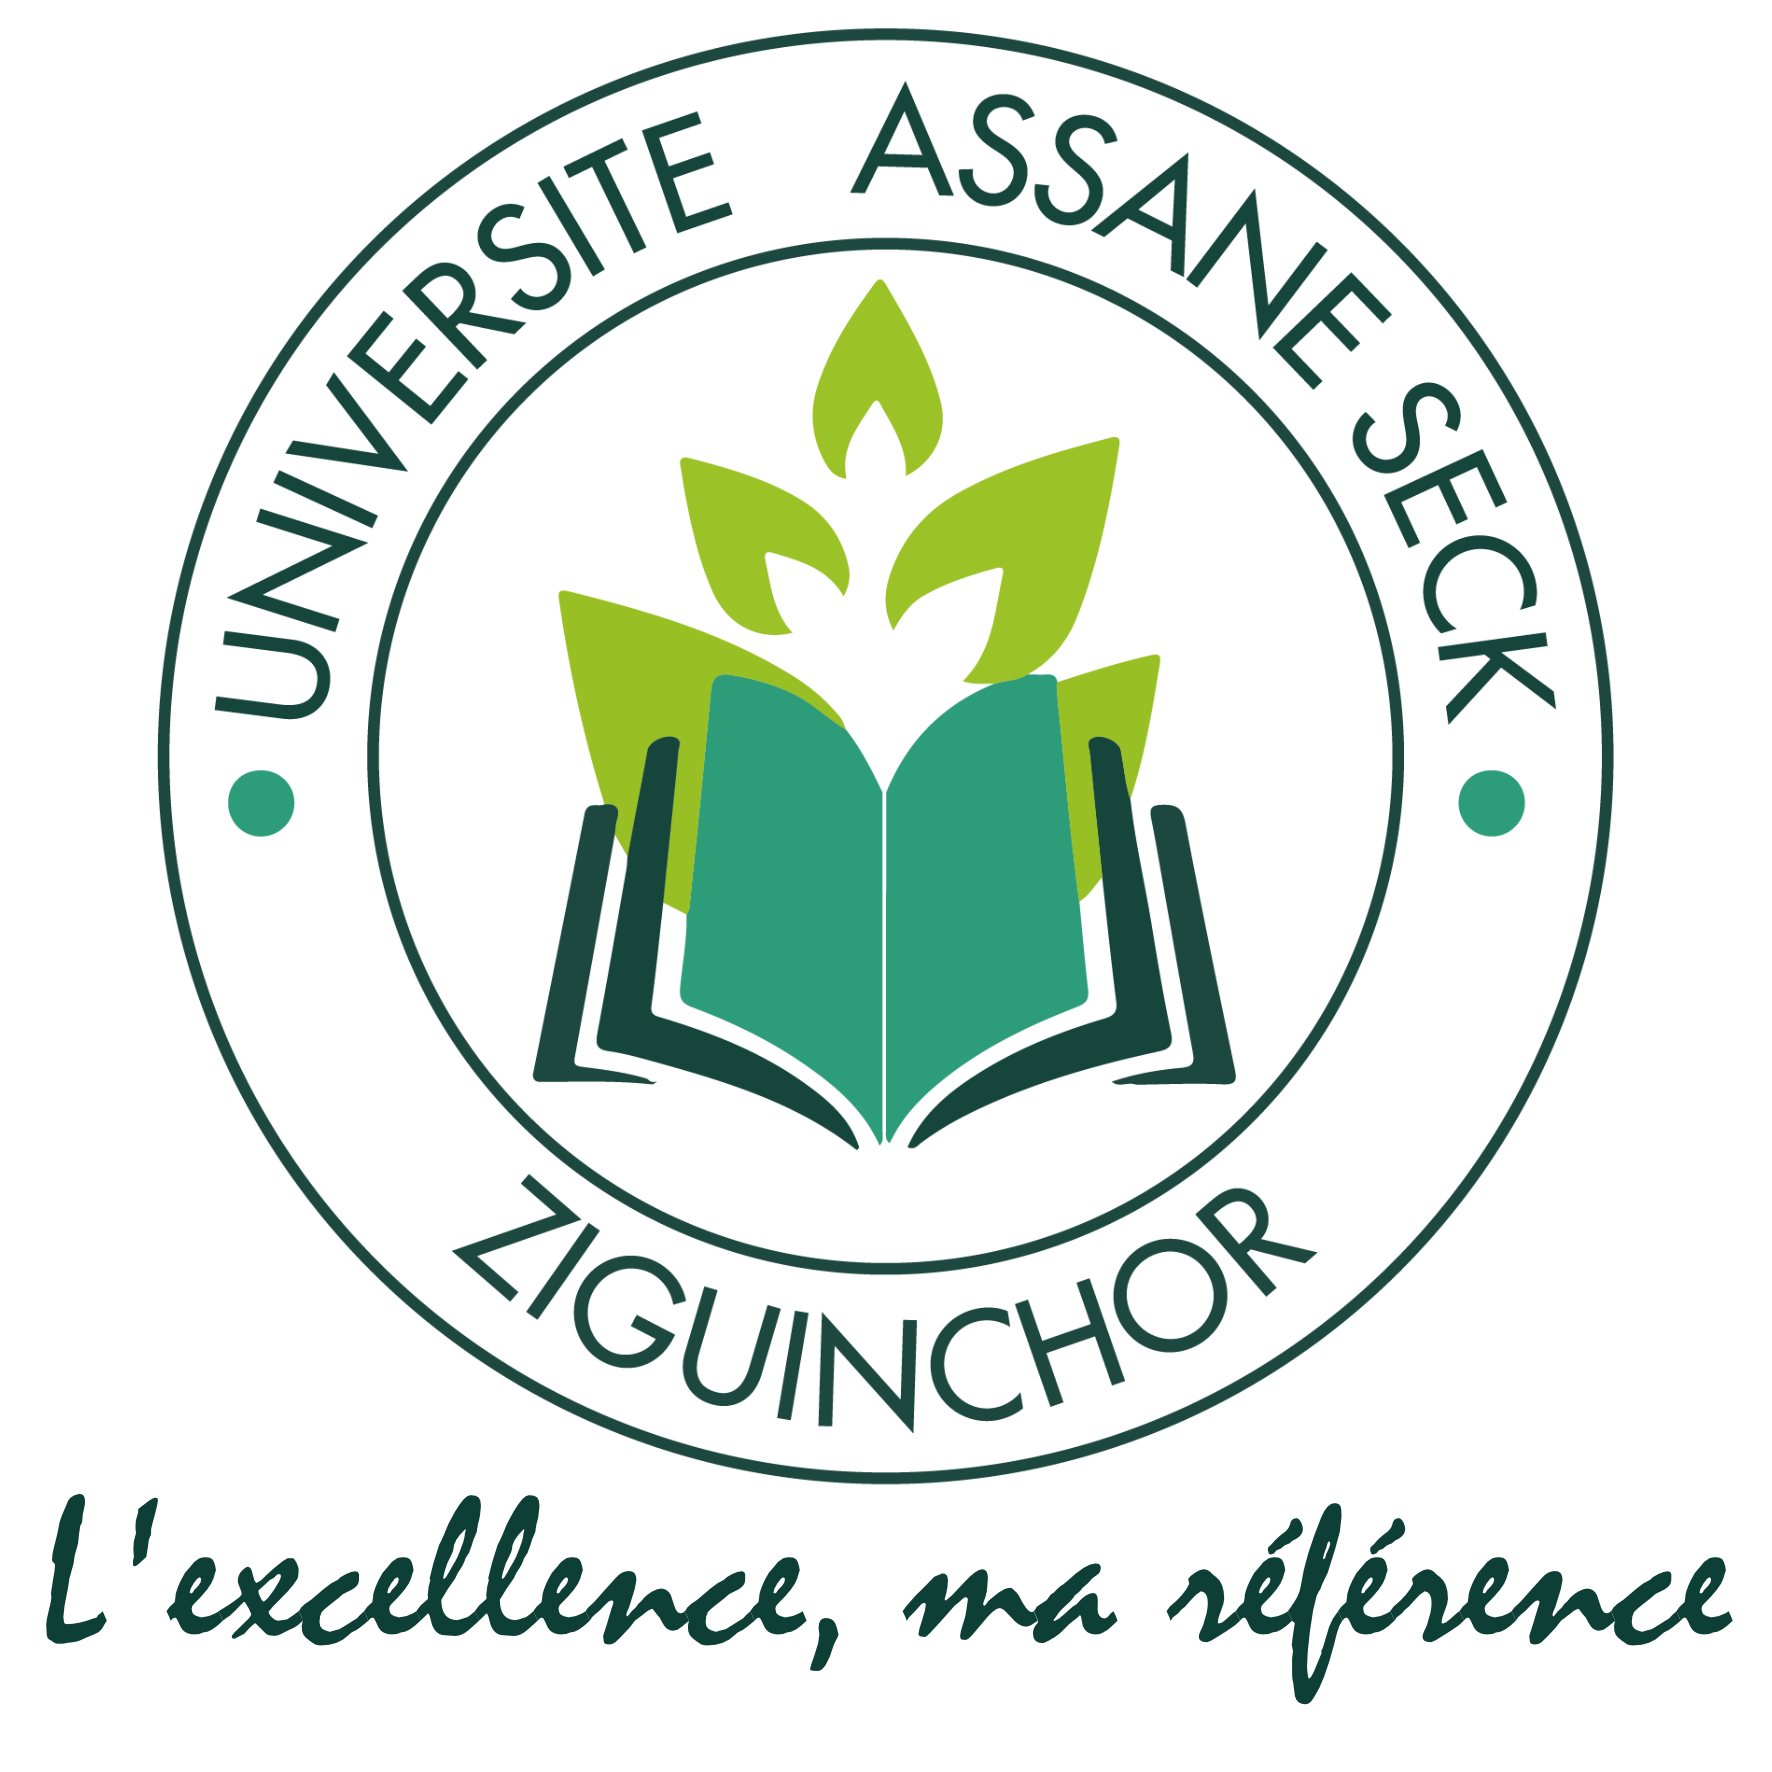 Recrutement d’un enseignant chercheur pour le département de sociologie | Université Assane Seck de Ziguinchor